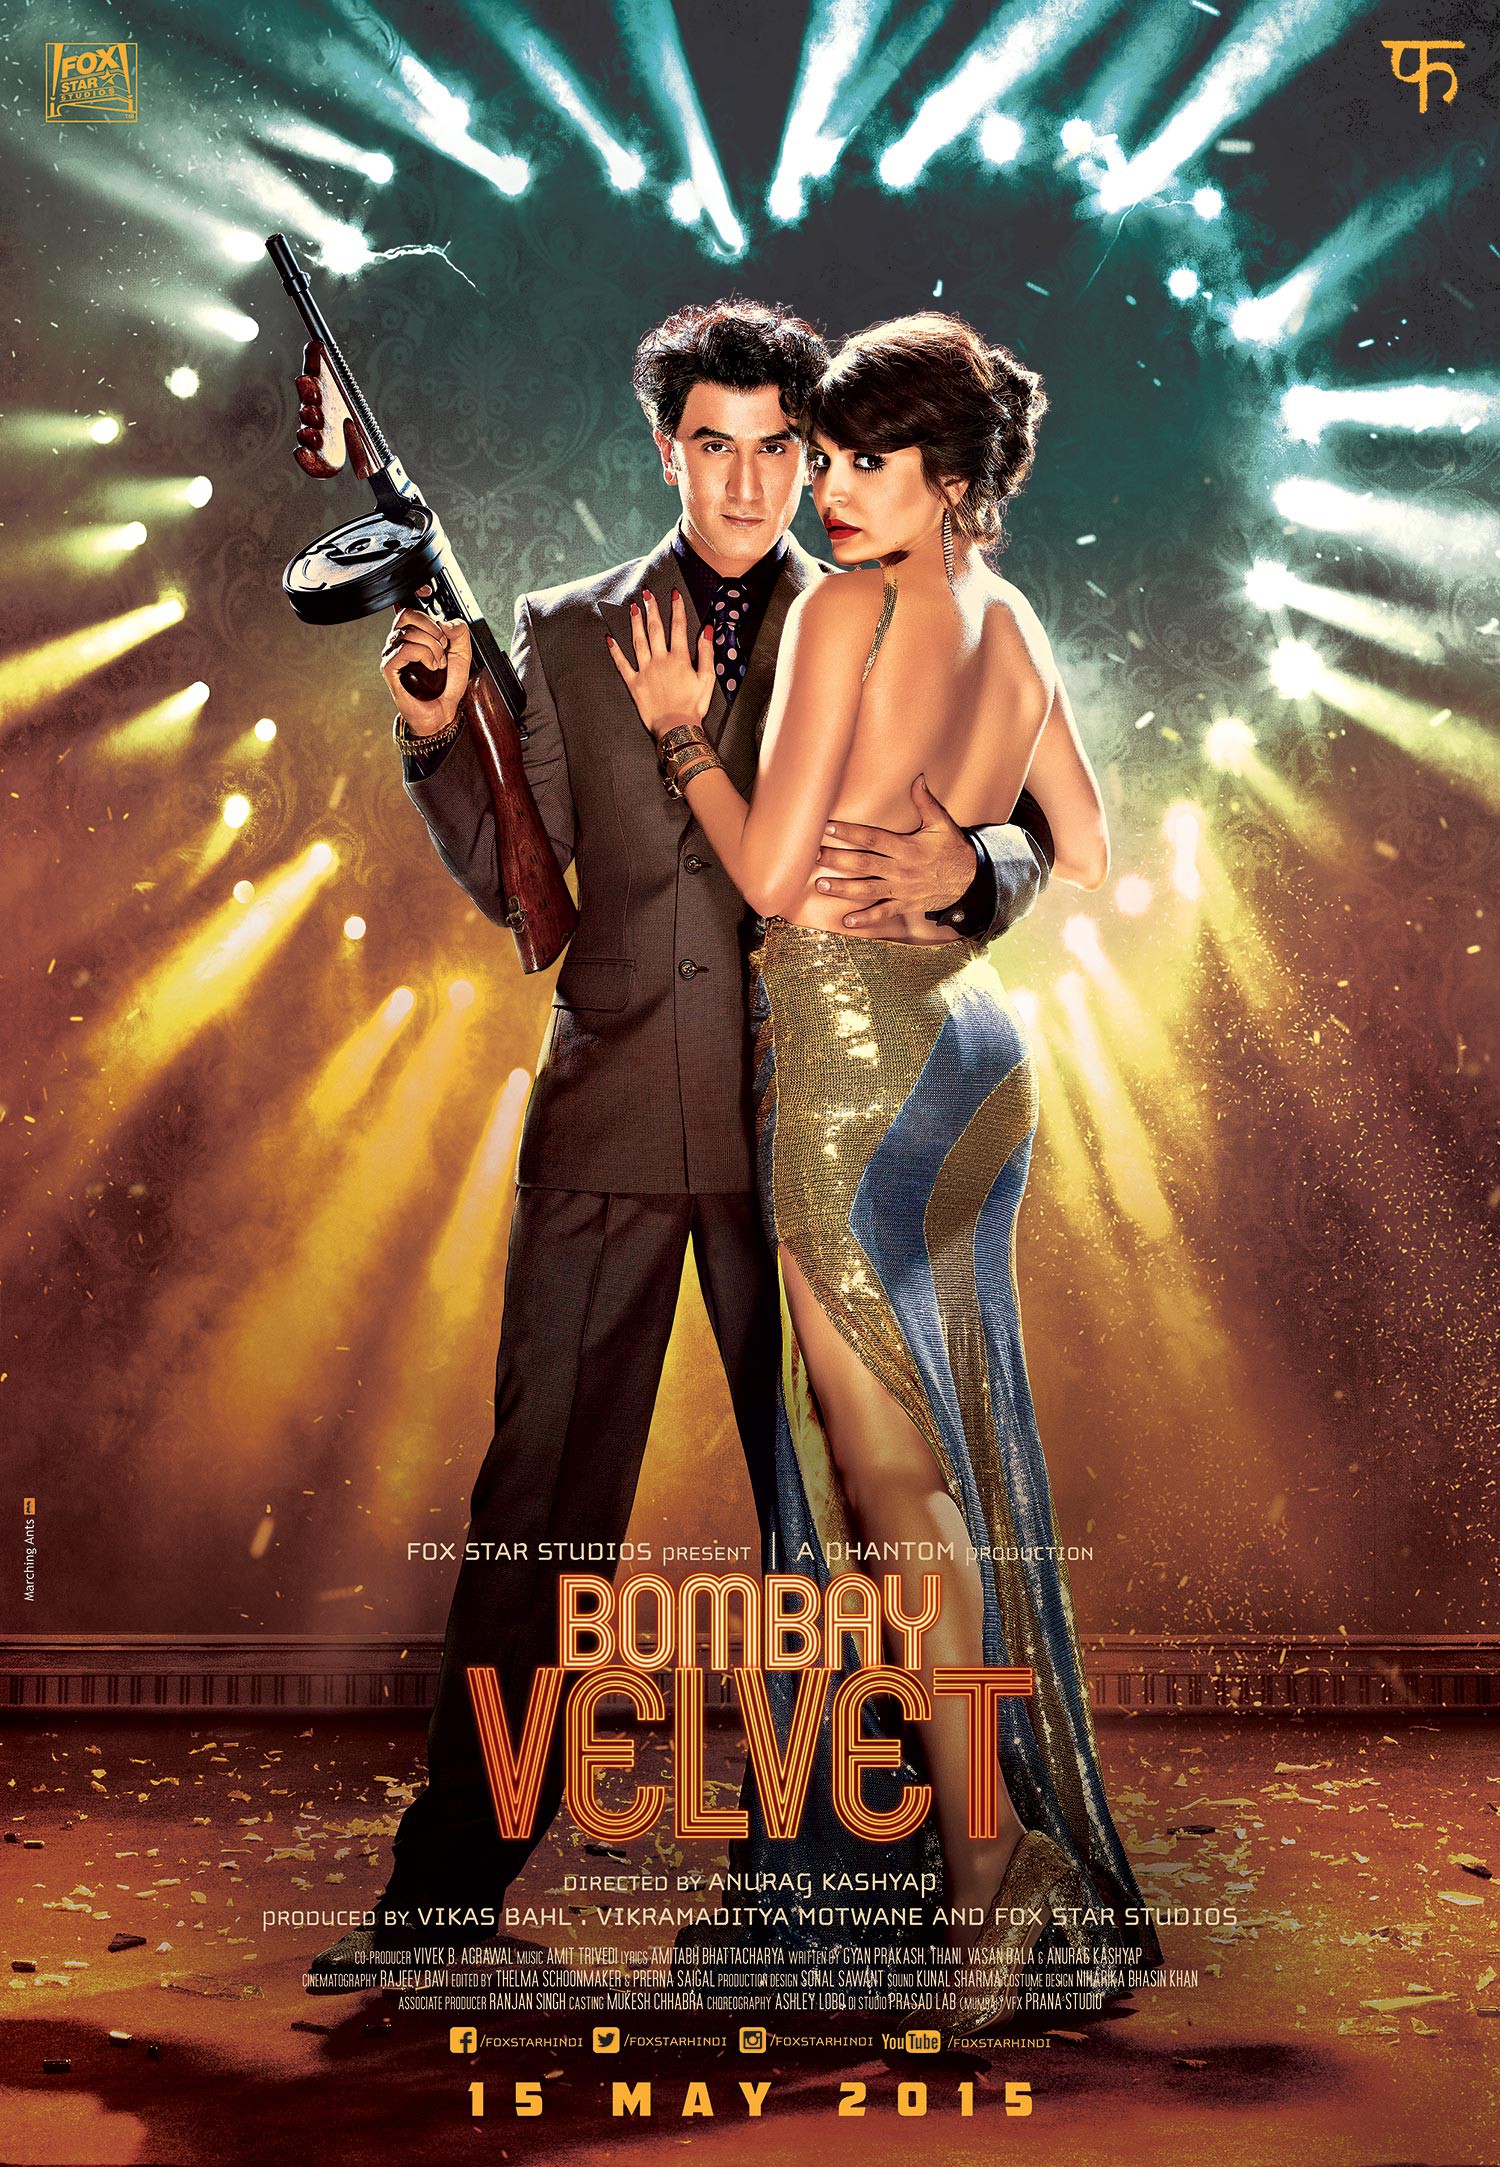 Mega Sized Movie Poster Image for Bombay Velvet (#6 of 8)